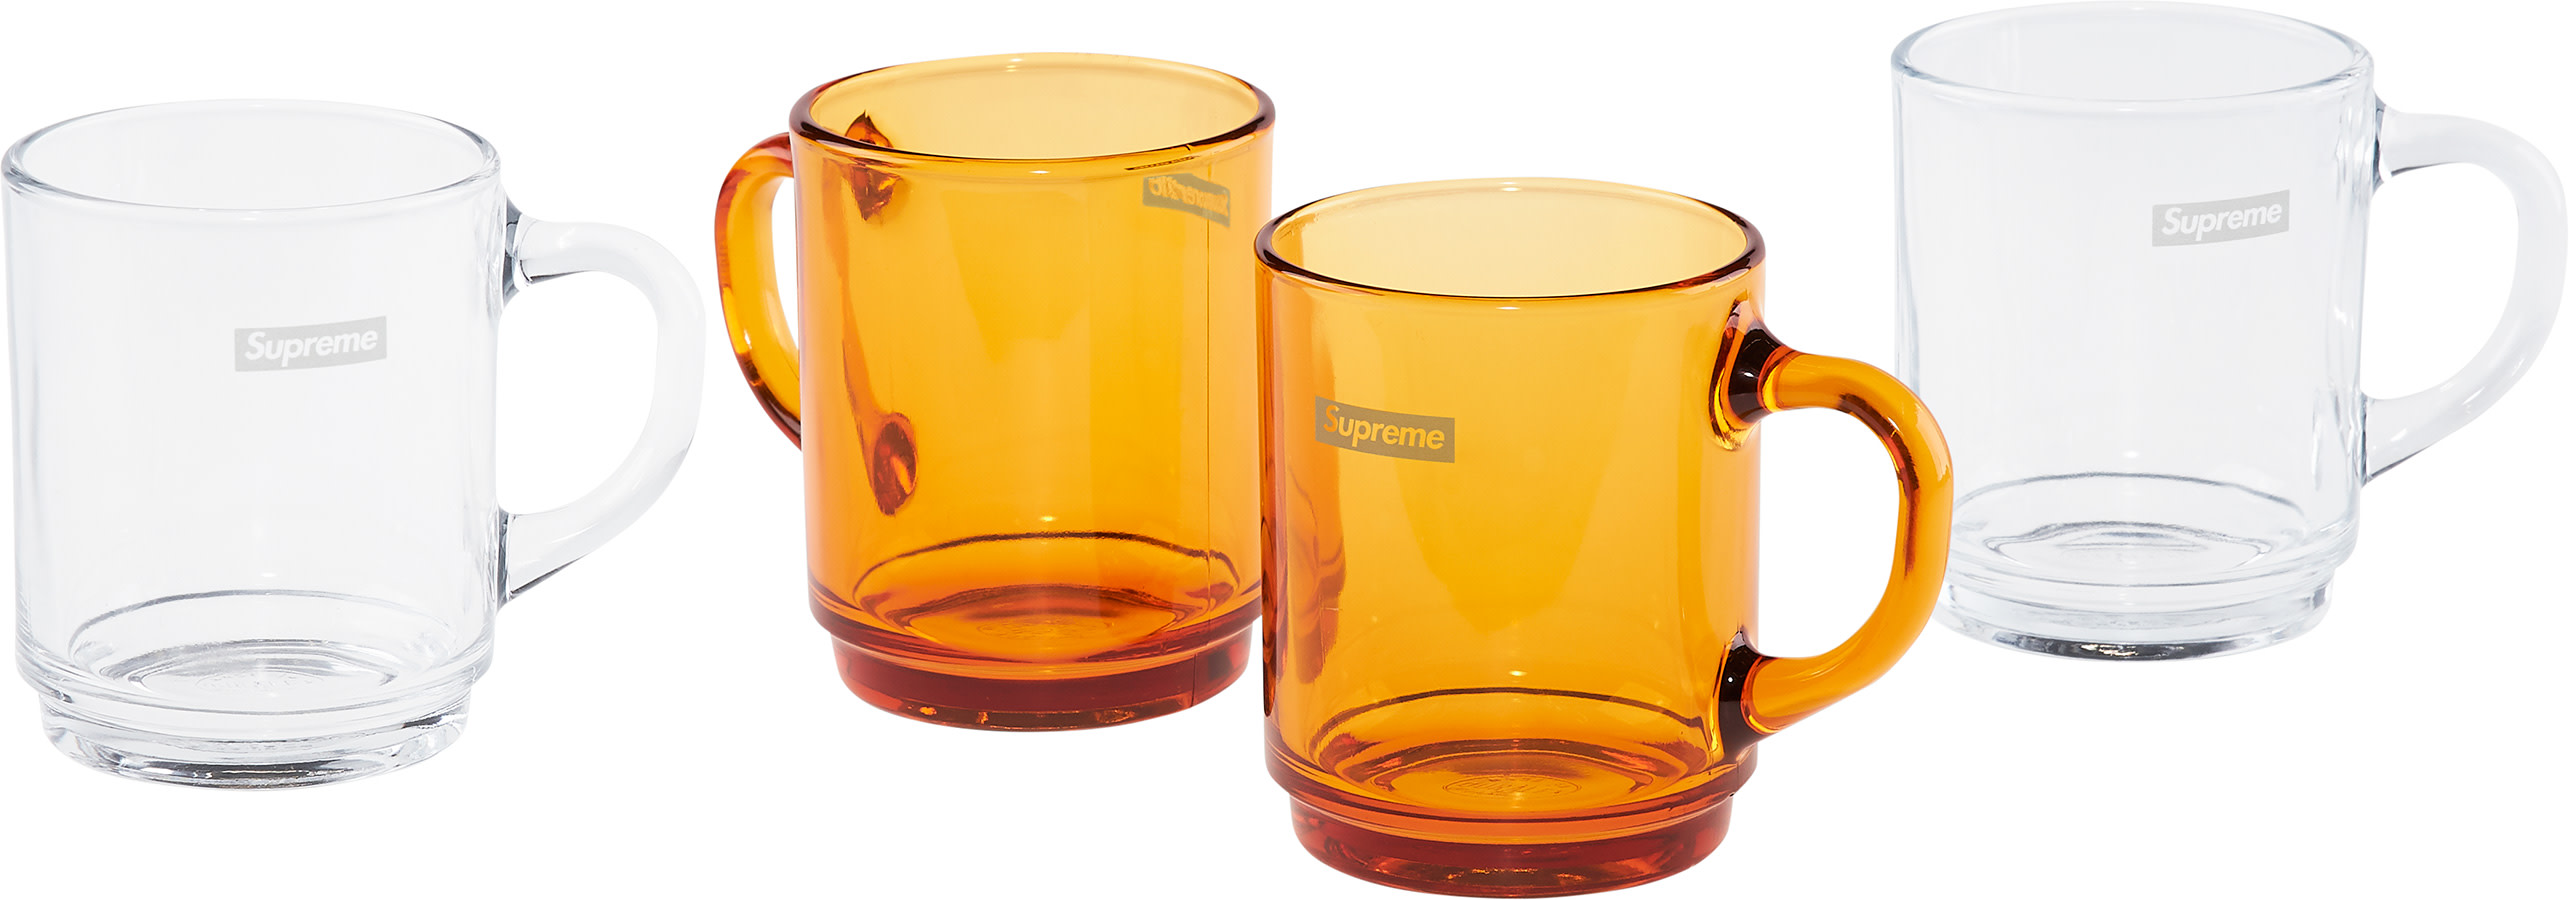 Supreme x Duralex Glass Mugs Set | Supreme - SLN Official